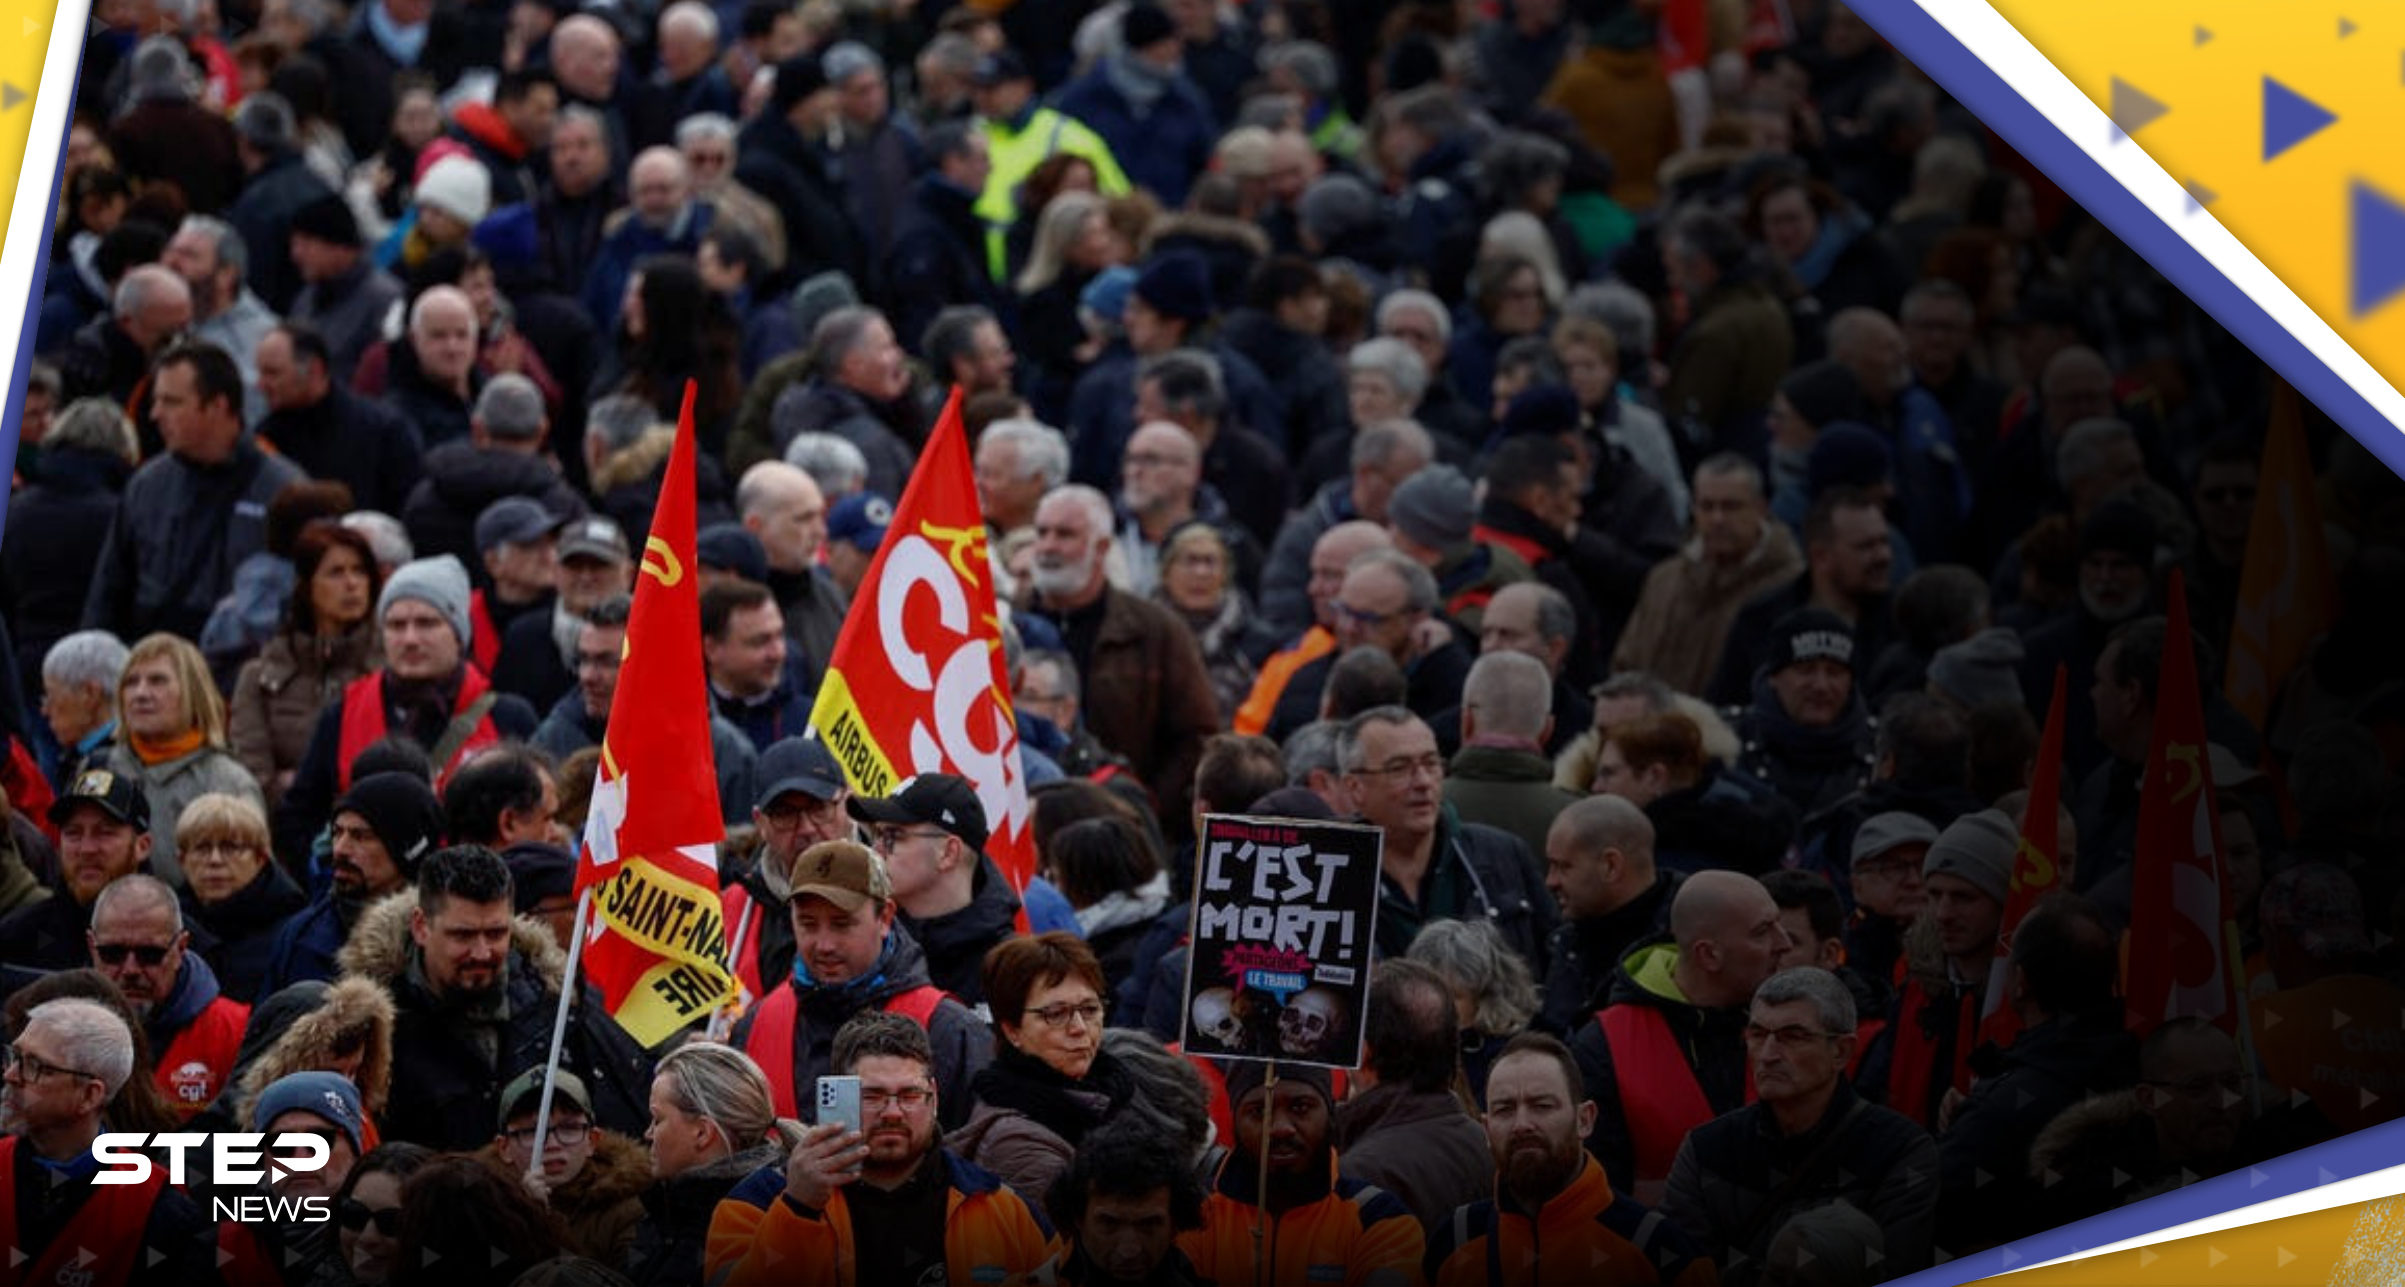 موجة احتجاجات في فرنسا والسُلطات تستنفر خوفاً من "انفلات" الأوضاع